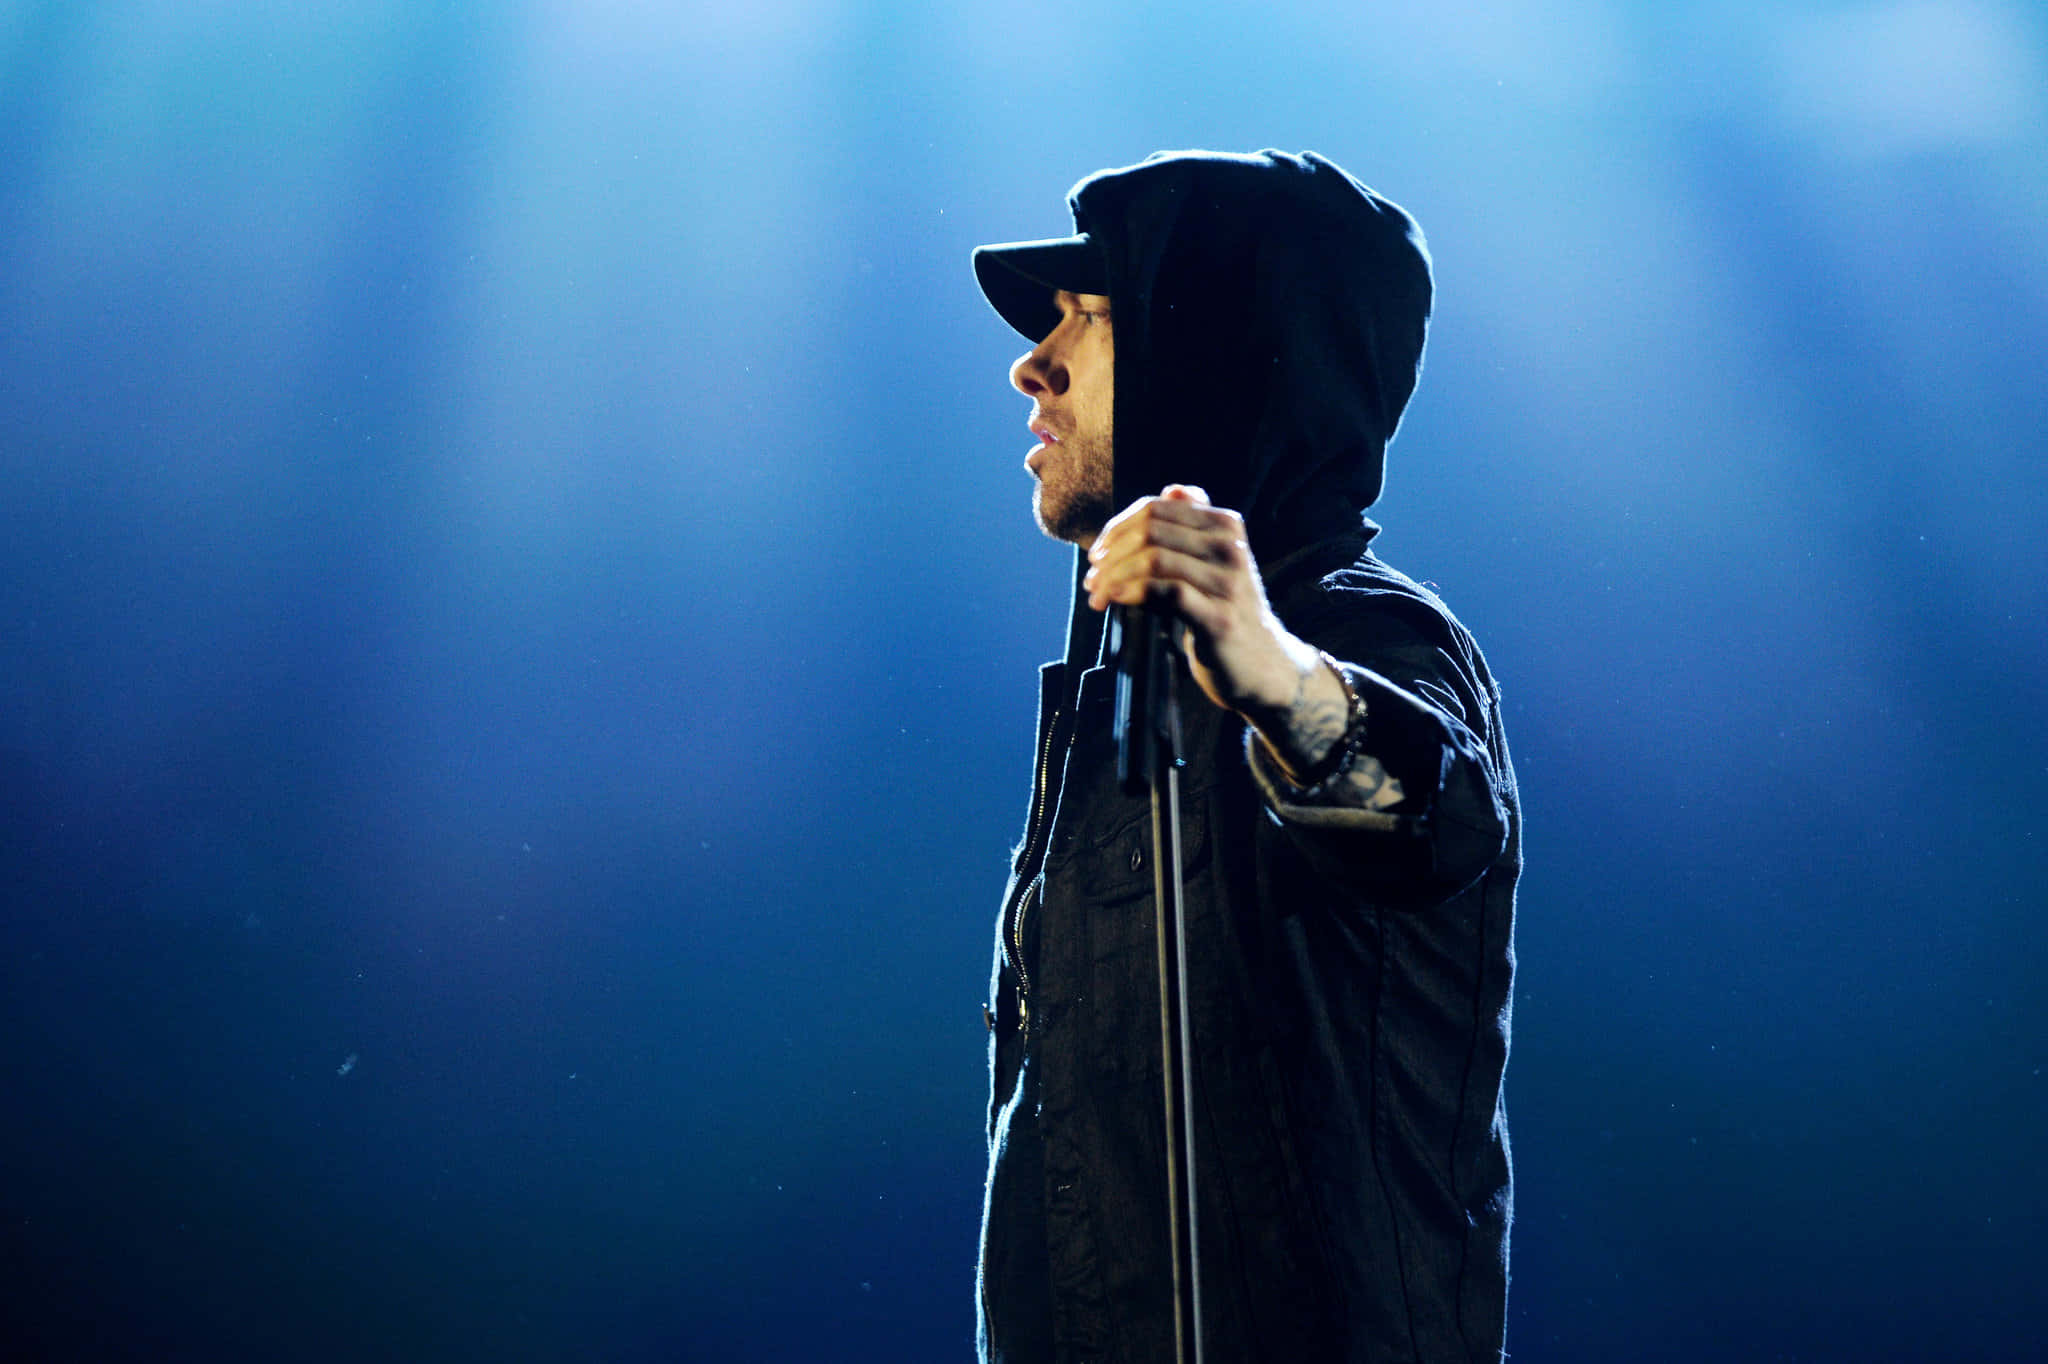 Eminembild 2048 X 1364